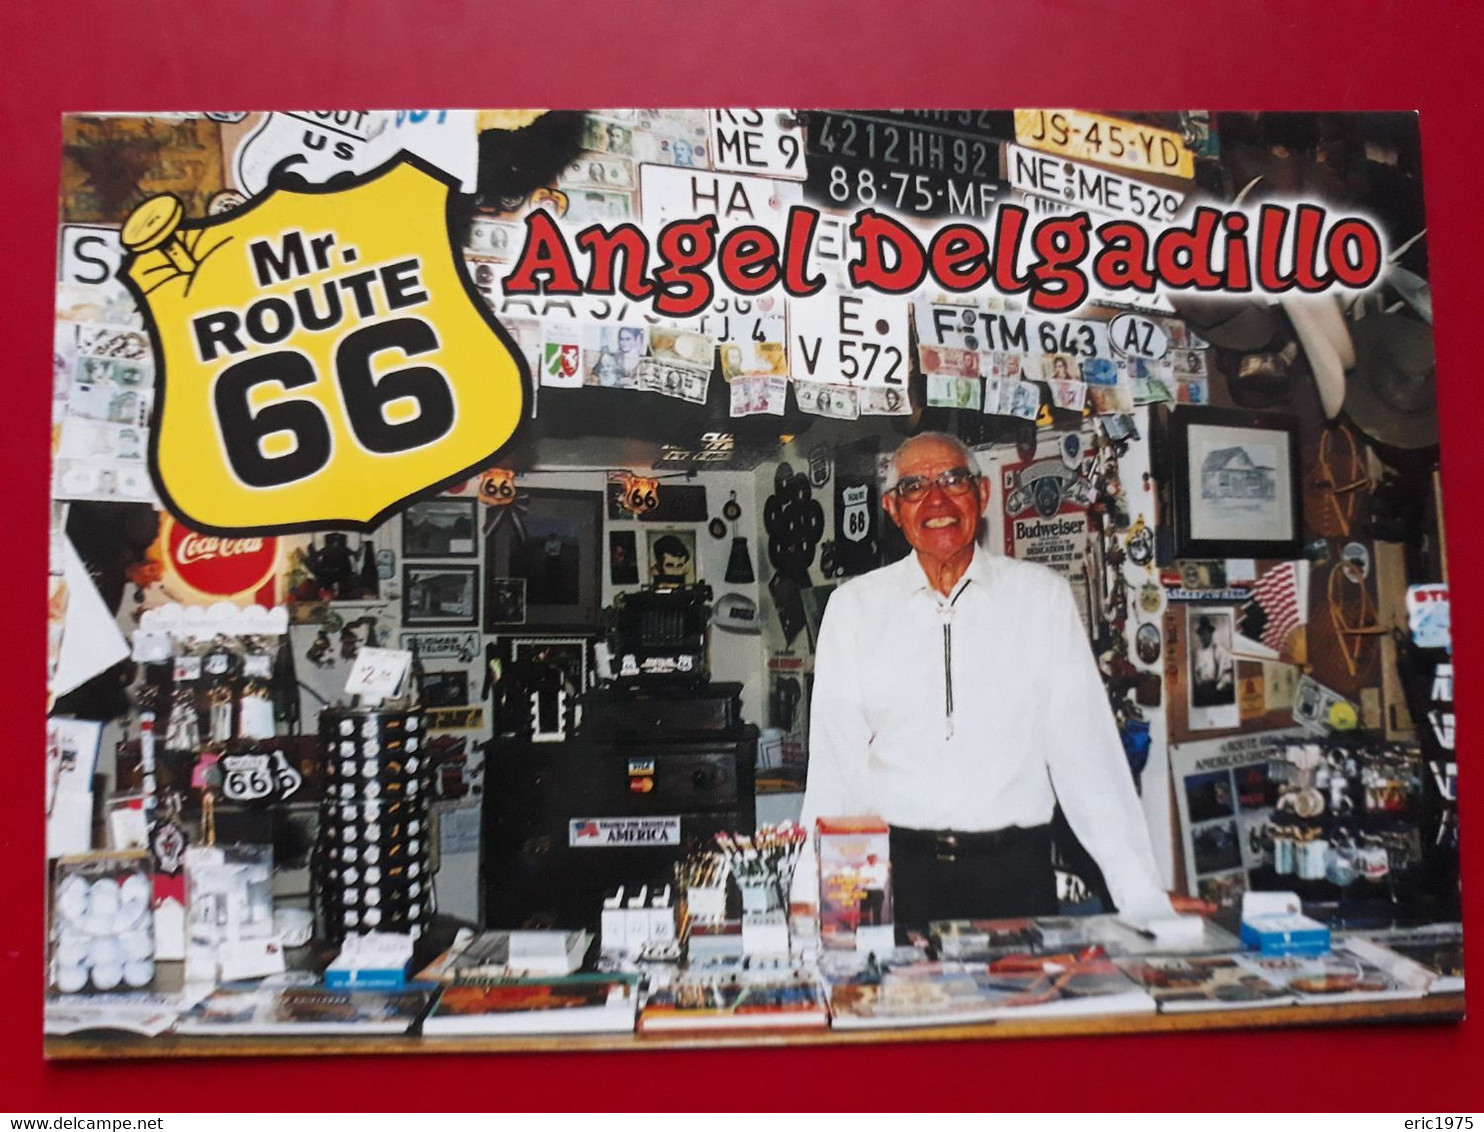 MR ROUTE 66 ANGEL DELGADILLO - Sedona